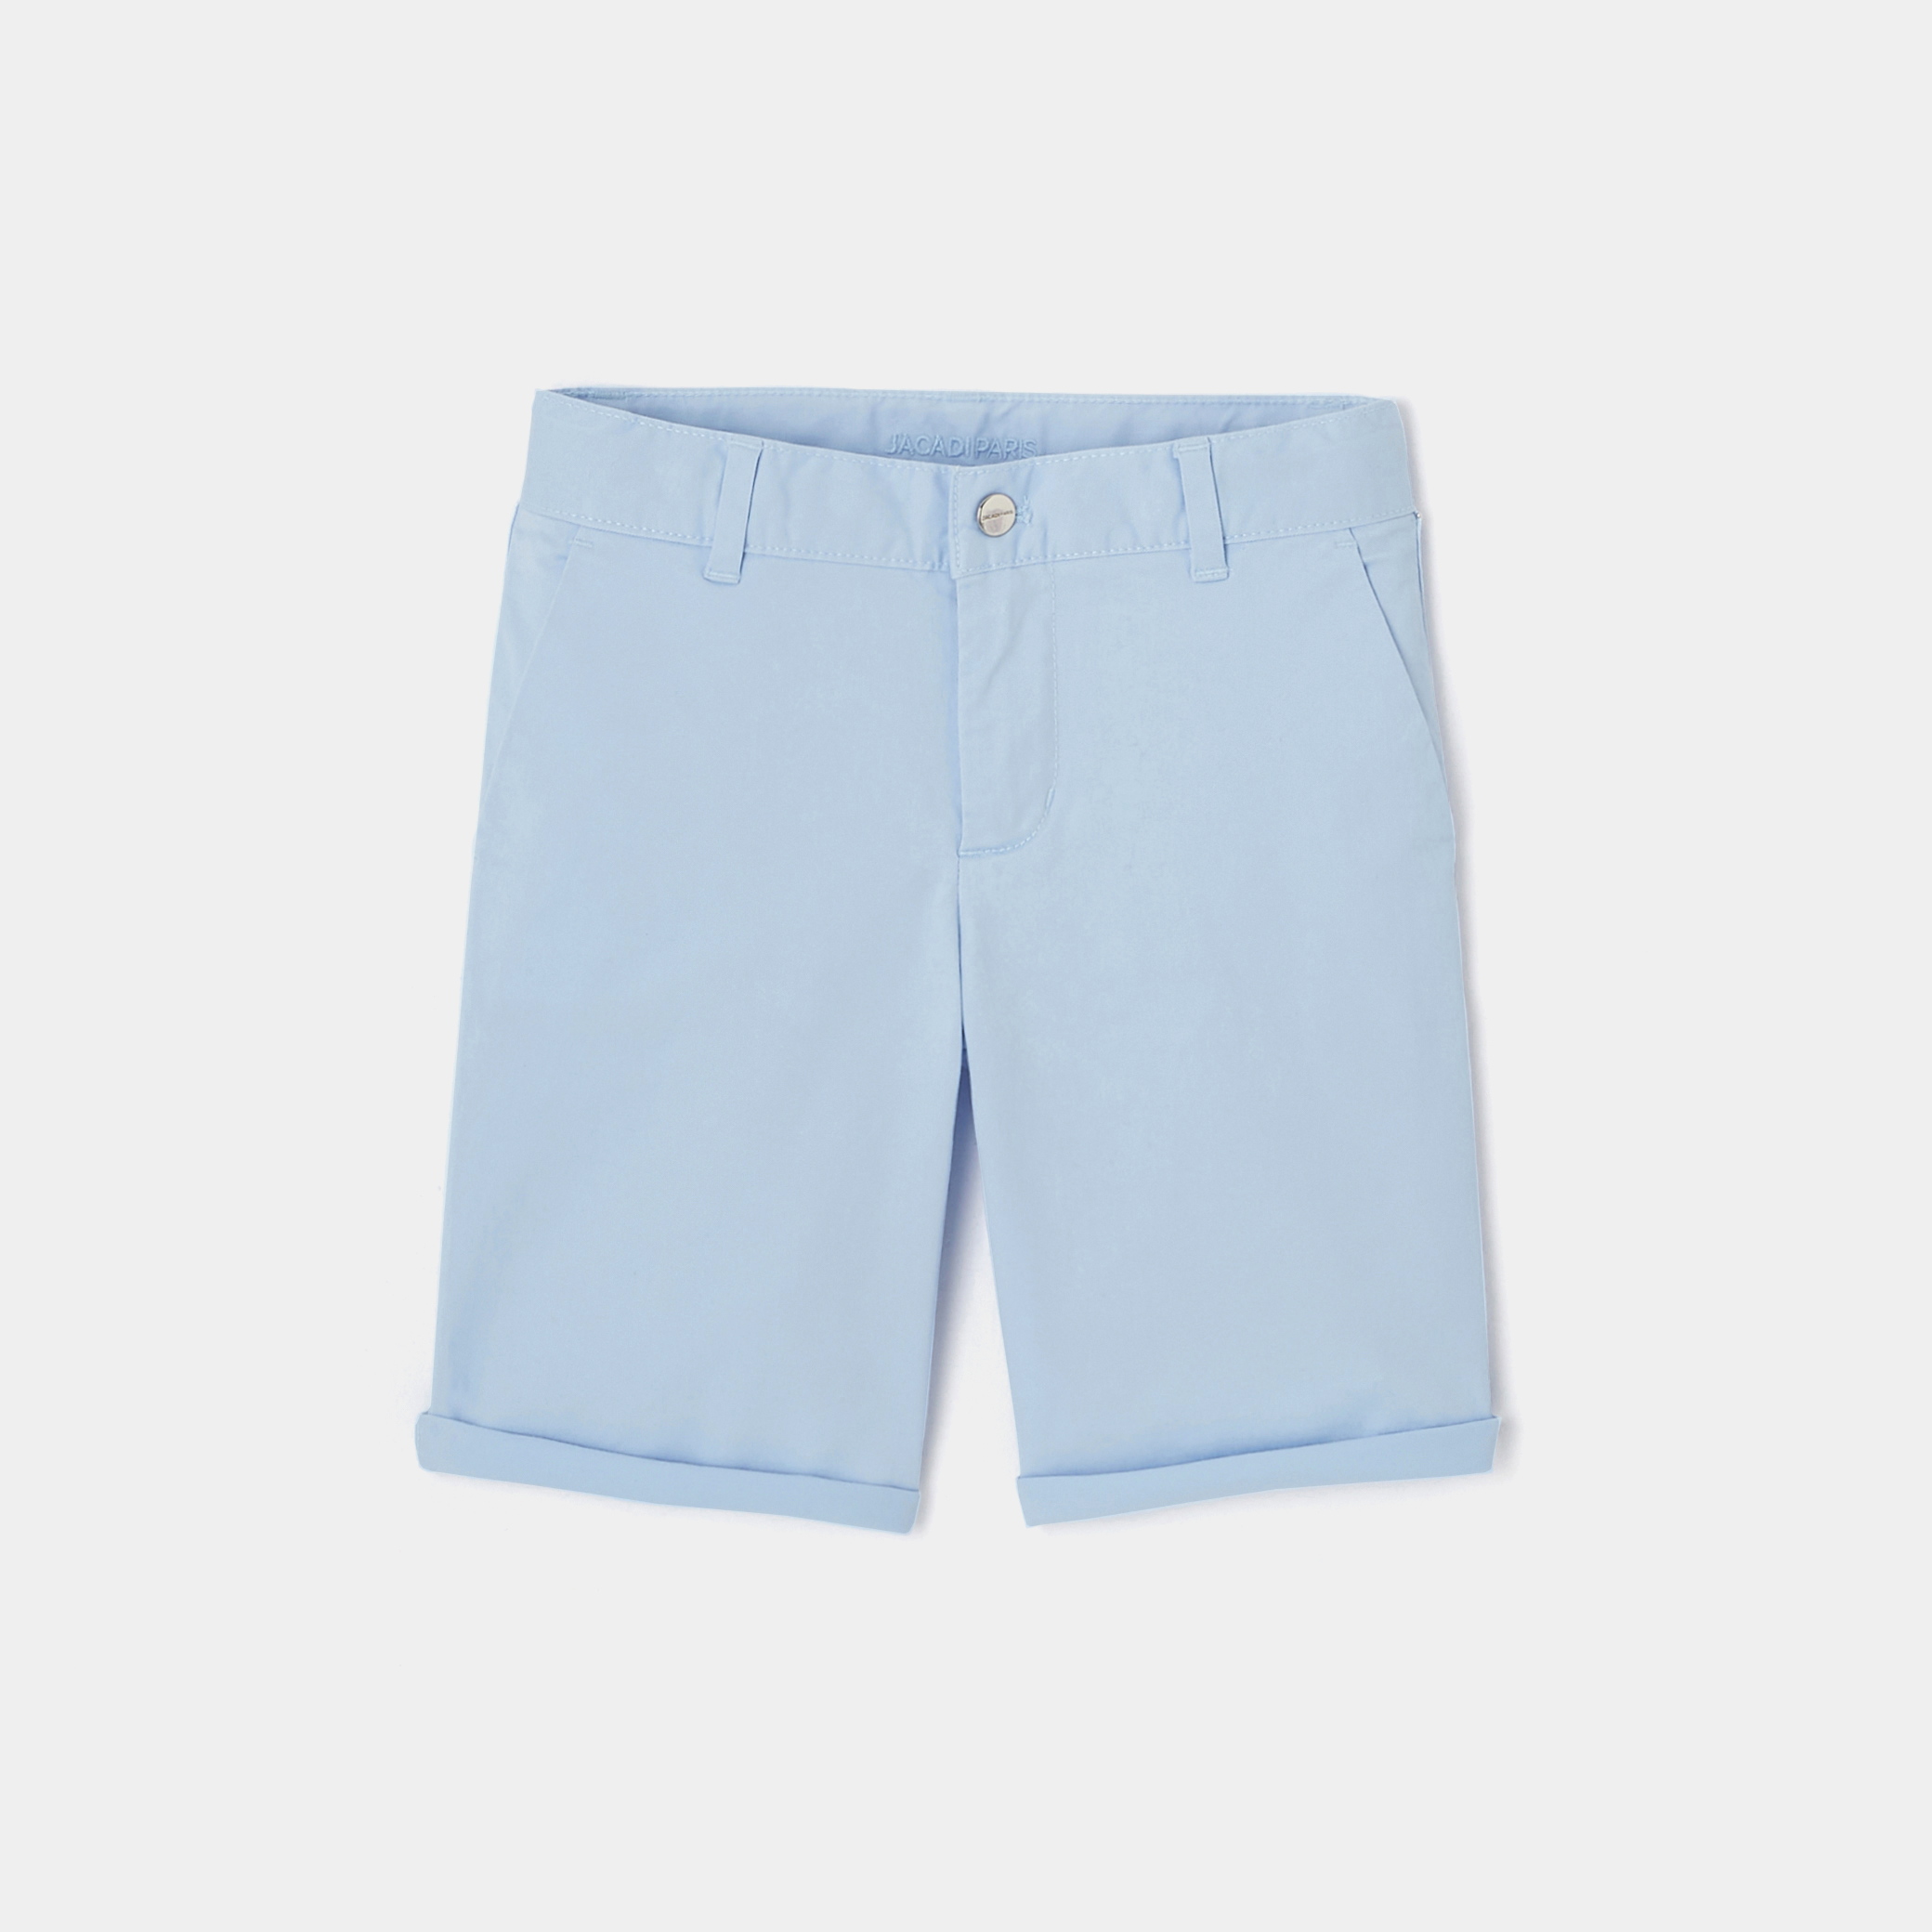 Boy slacks style Bermuda shorts